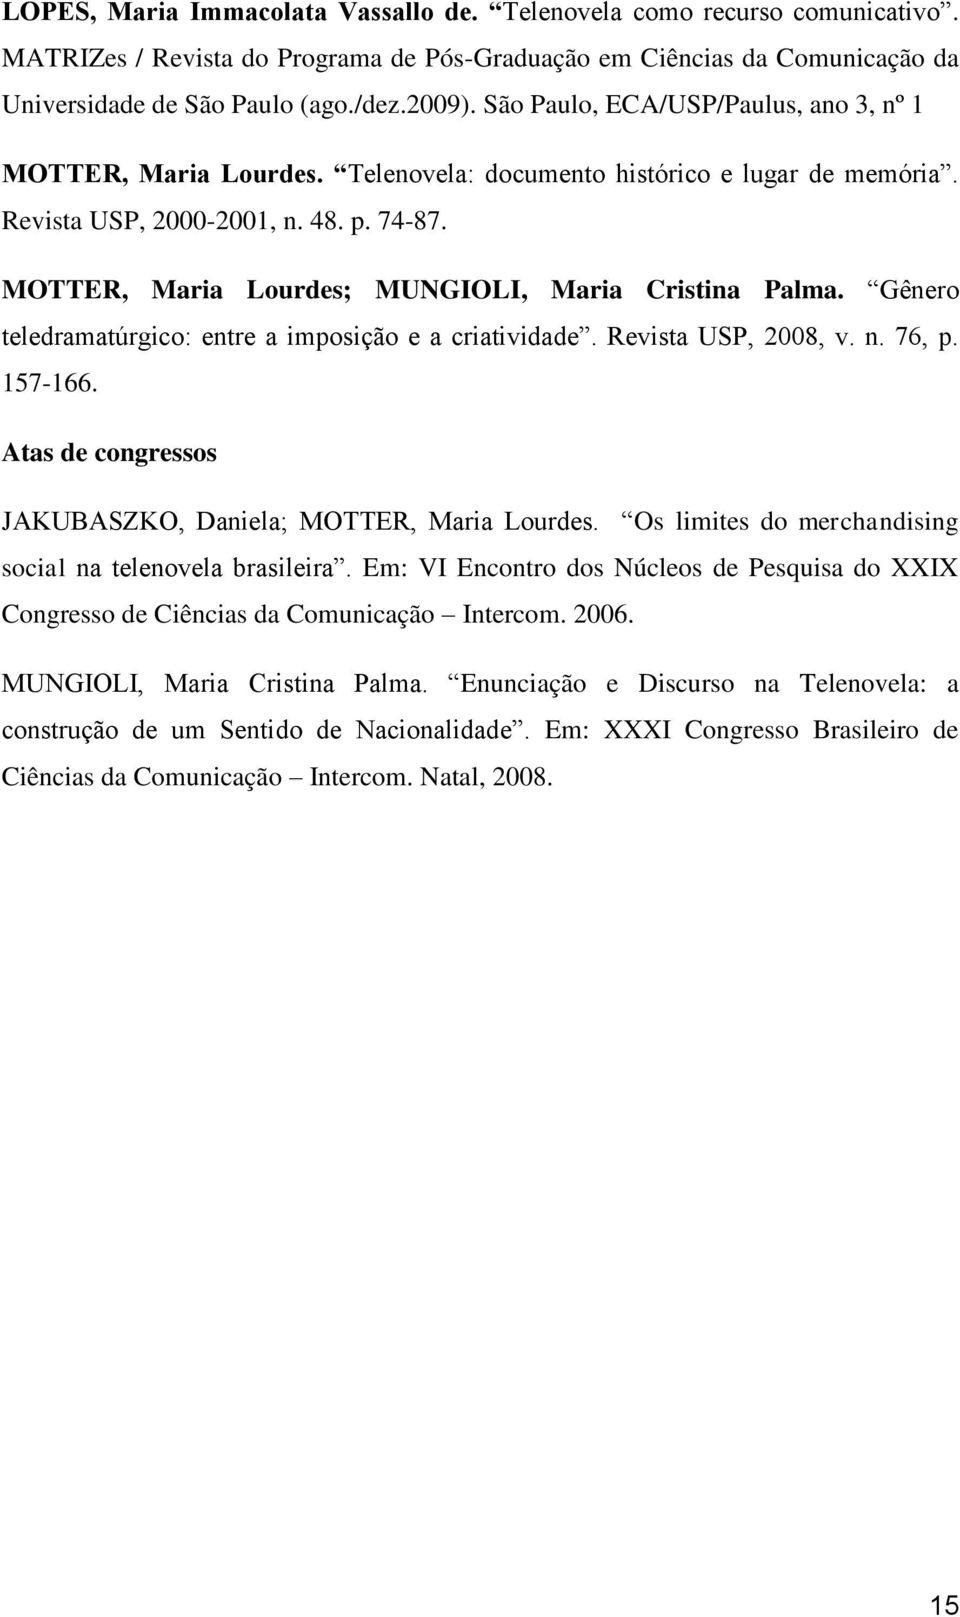 MOTTER, Maria Lourdes; MUNGIOLI, Maria Cristina Palma. Gênero teledramatúrgico: entre a imposição e a criatividade. Revista USP, 2008, v. n. 76, p. 157-166.